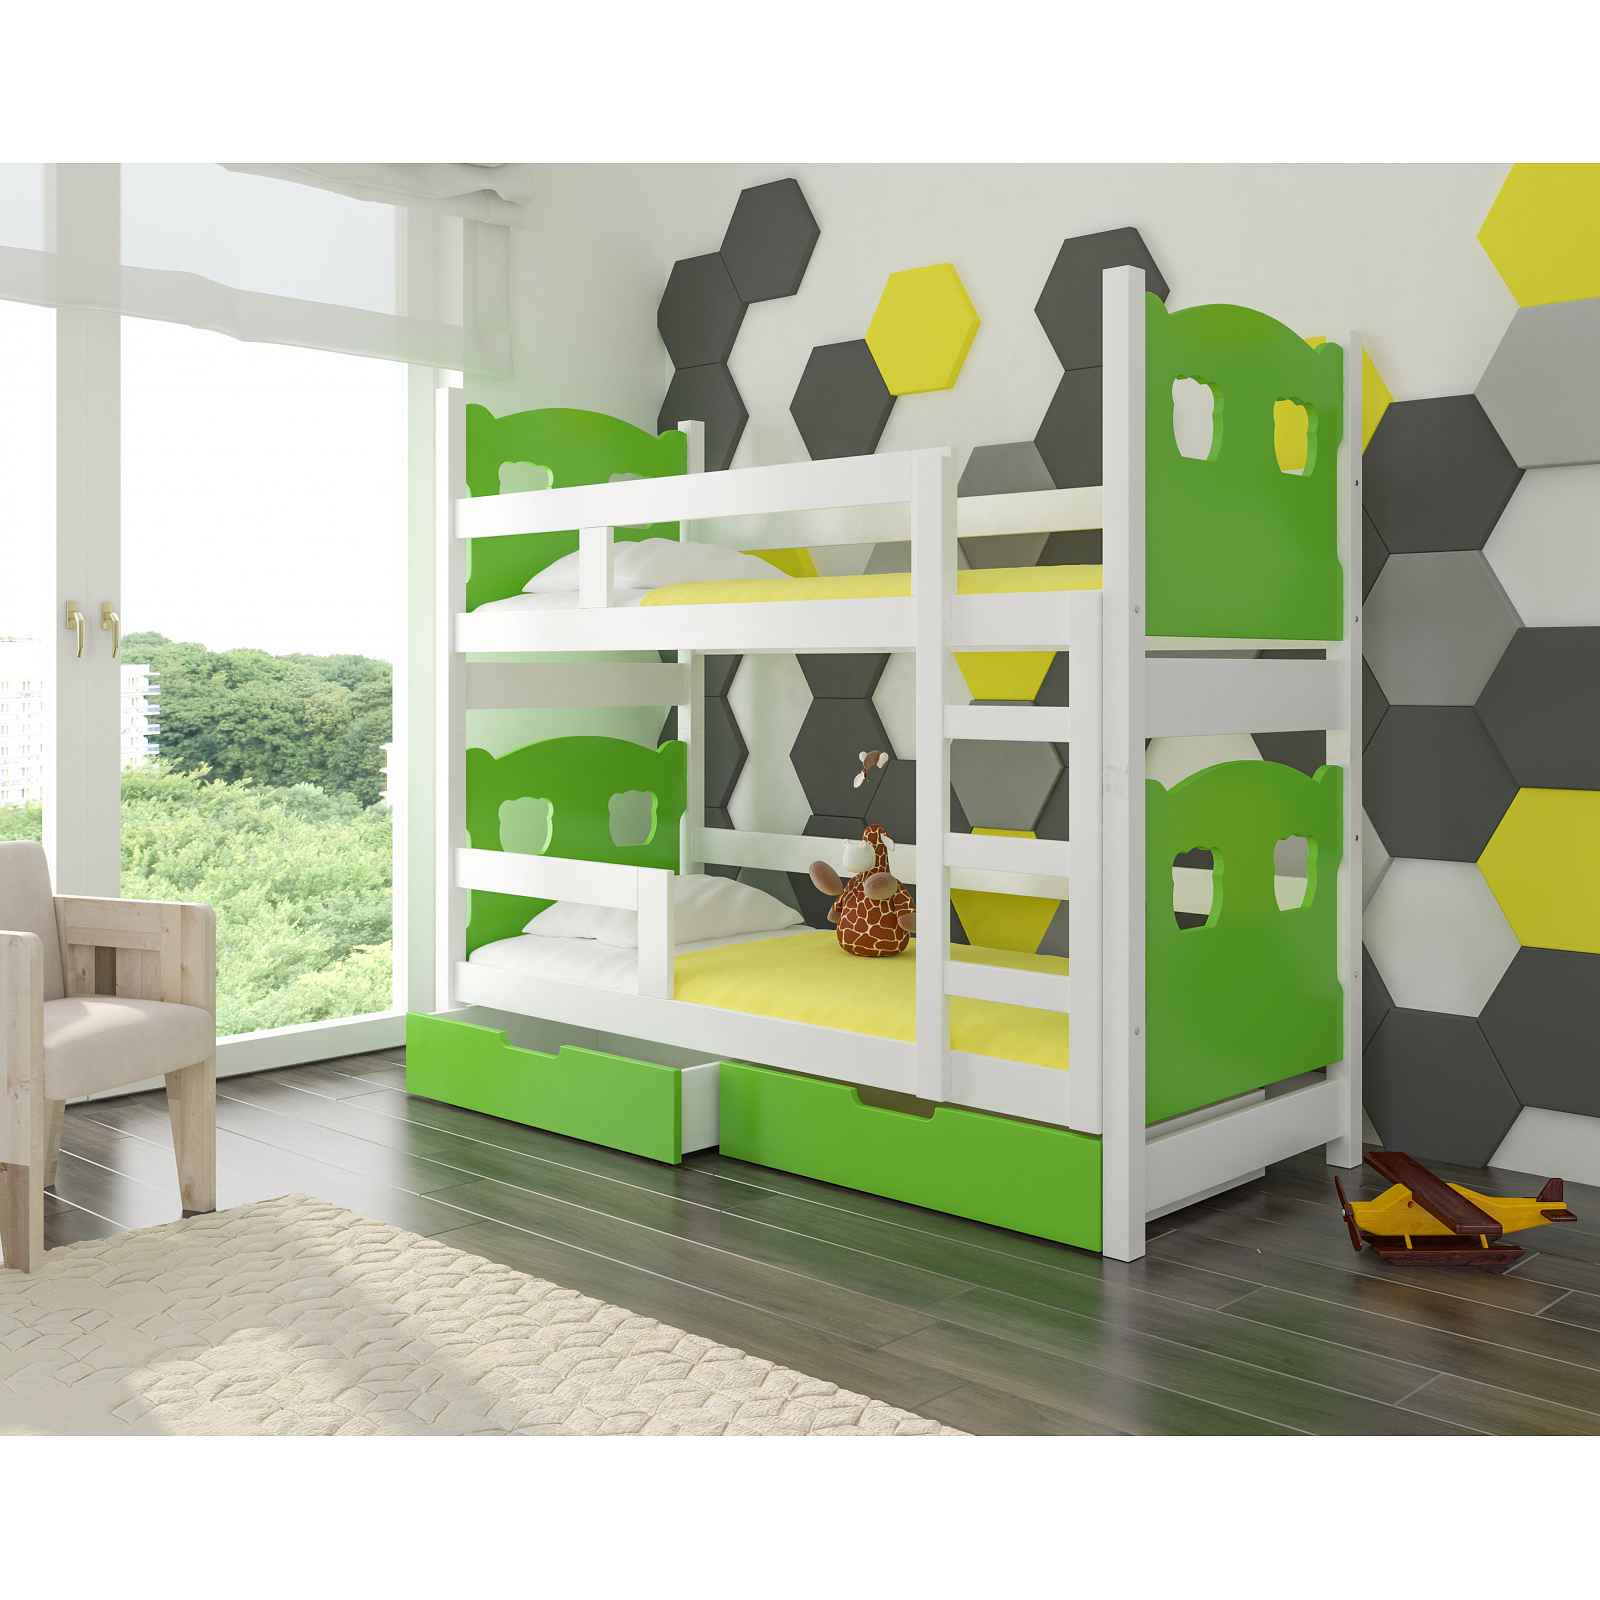 Dětská patrová postel Marika, bílá/zelená + matrace ZDARMA! HELCEL